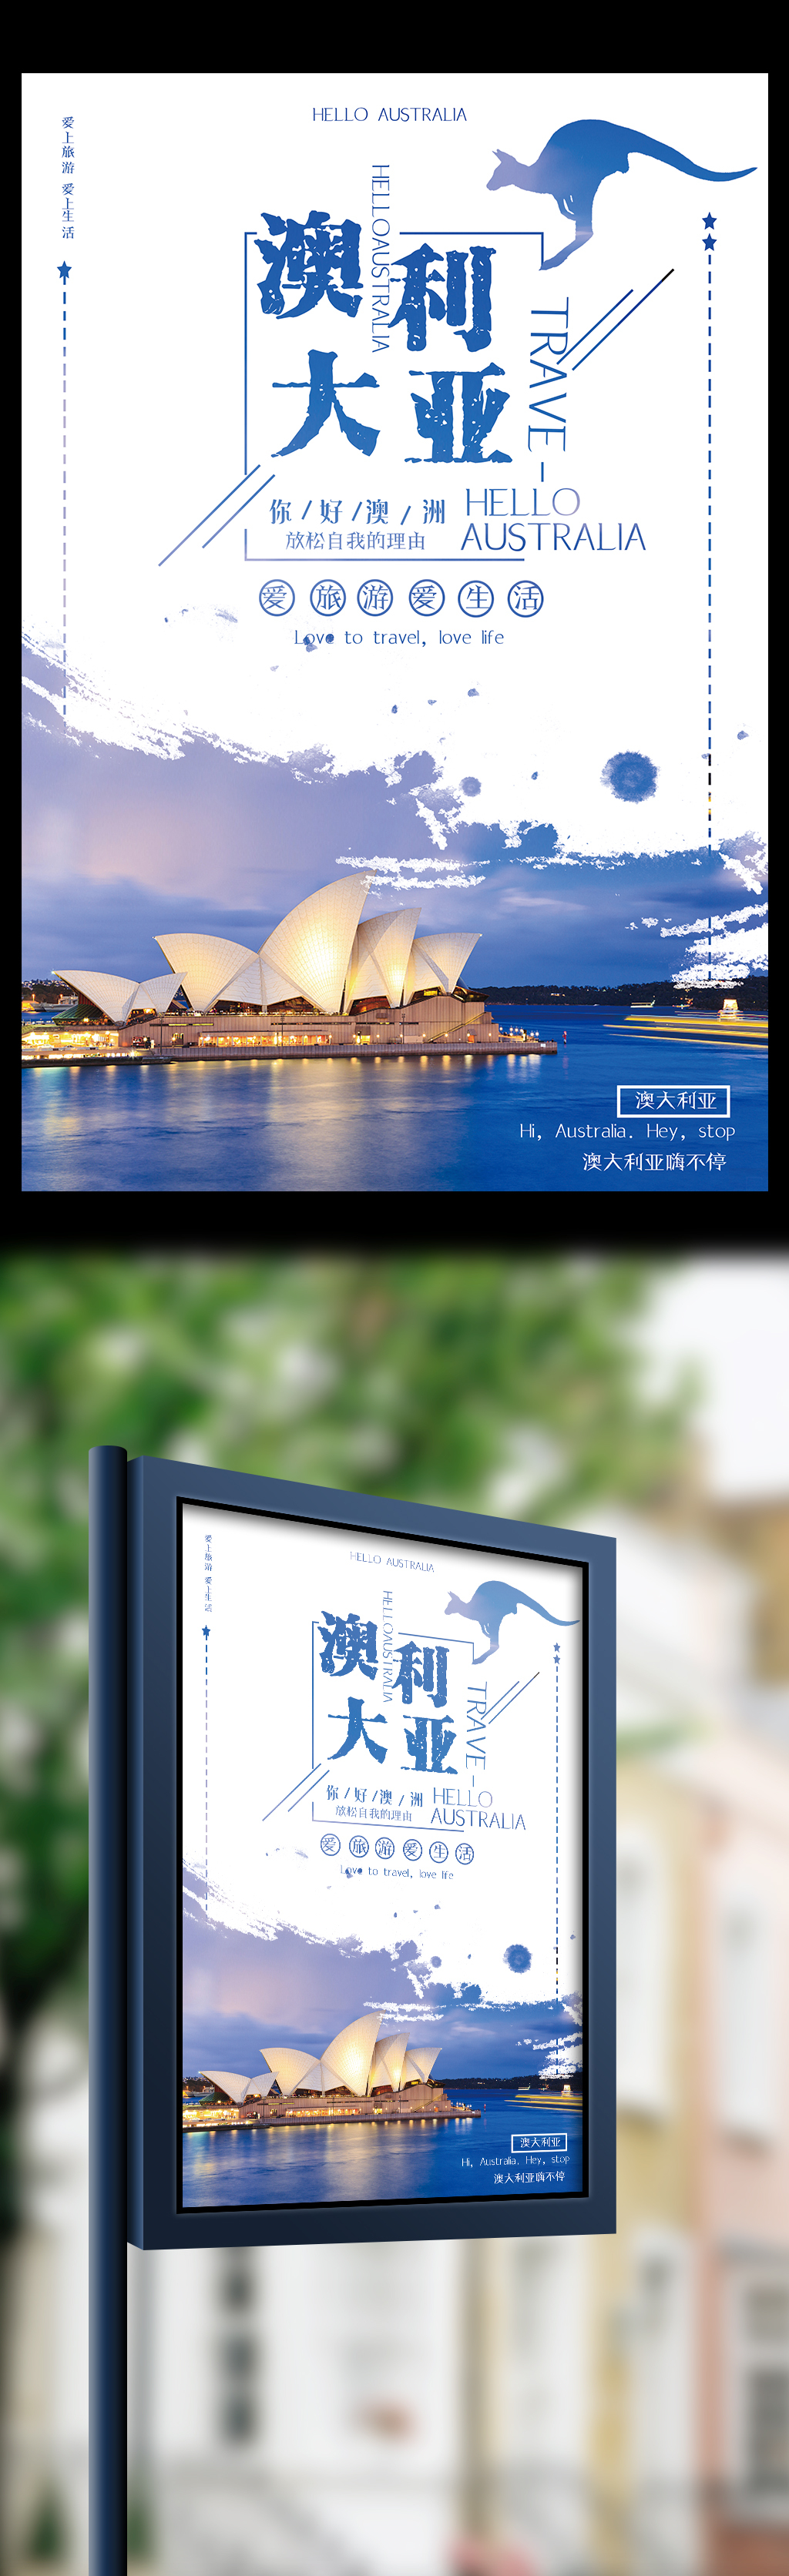 澳大利亚爱旅游爱生活宣传海报图片